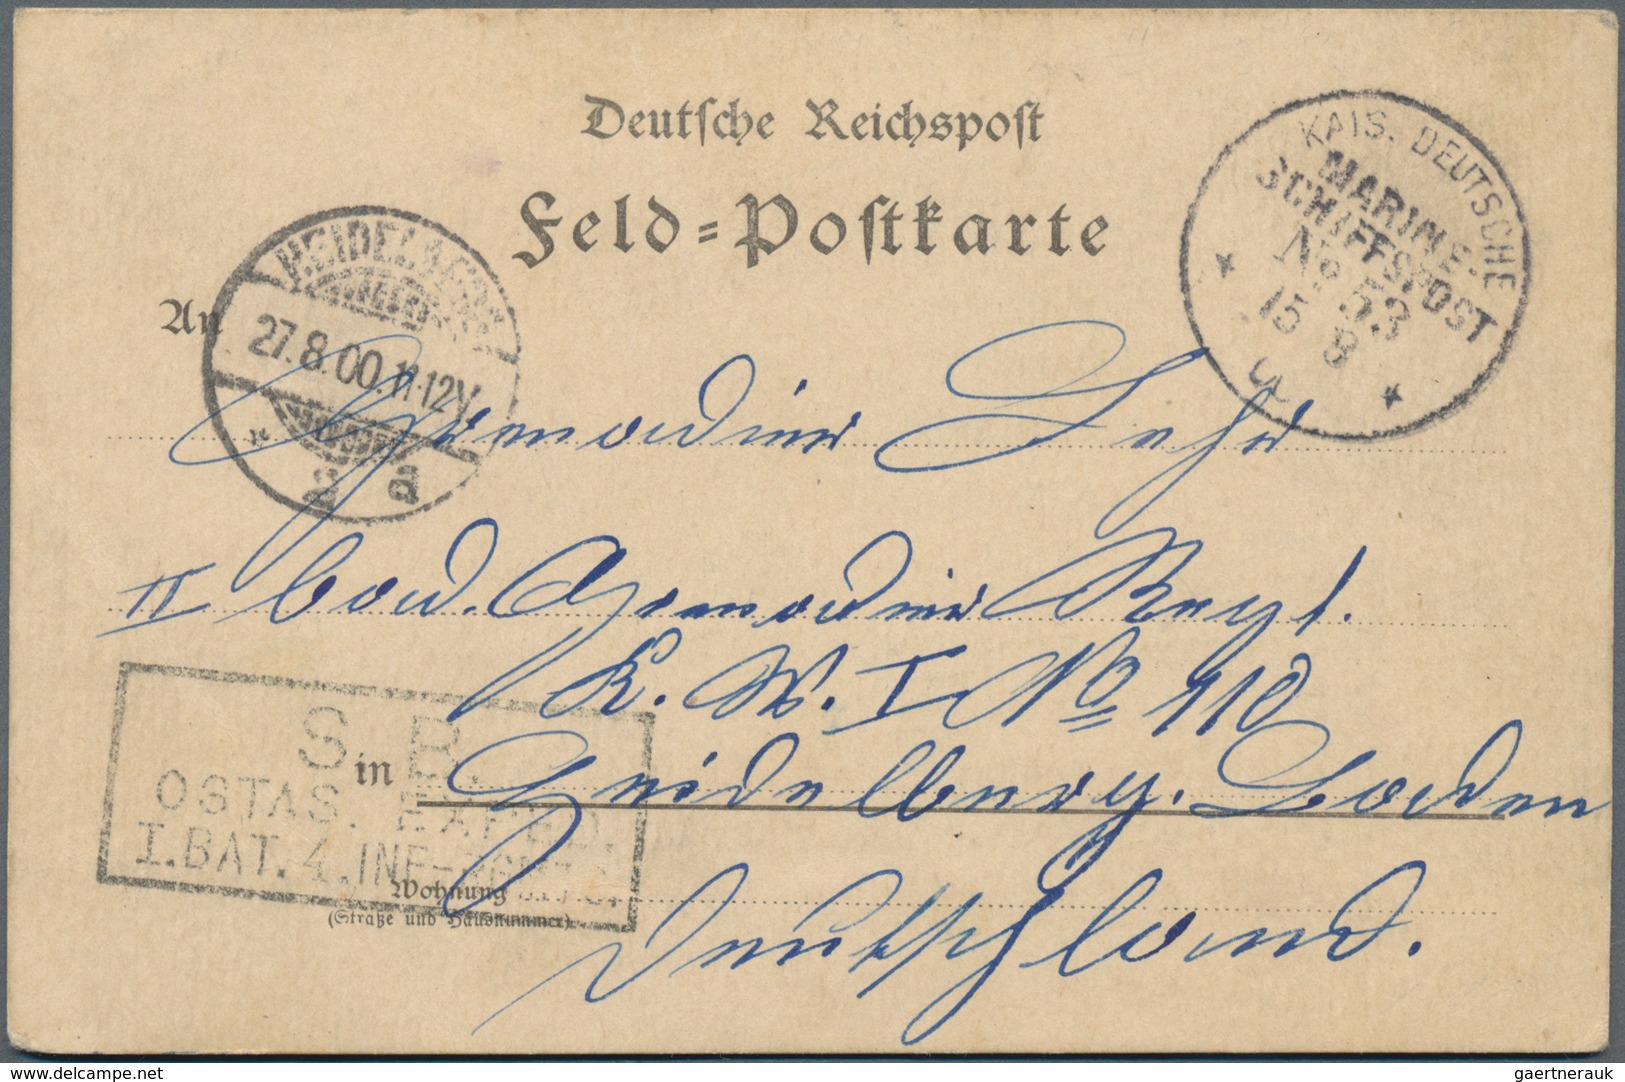 Deutsche Schiffspost - Marine: 1898/1940 (ca.), vielseitige Partie von 26 Schiffspost-Briefen und -K